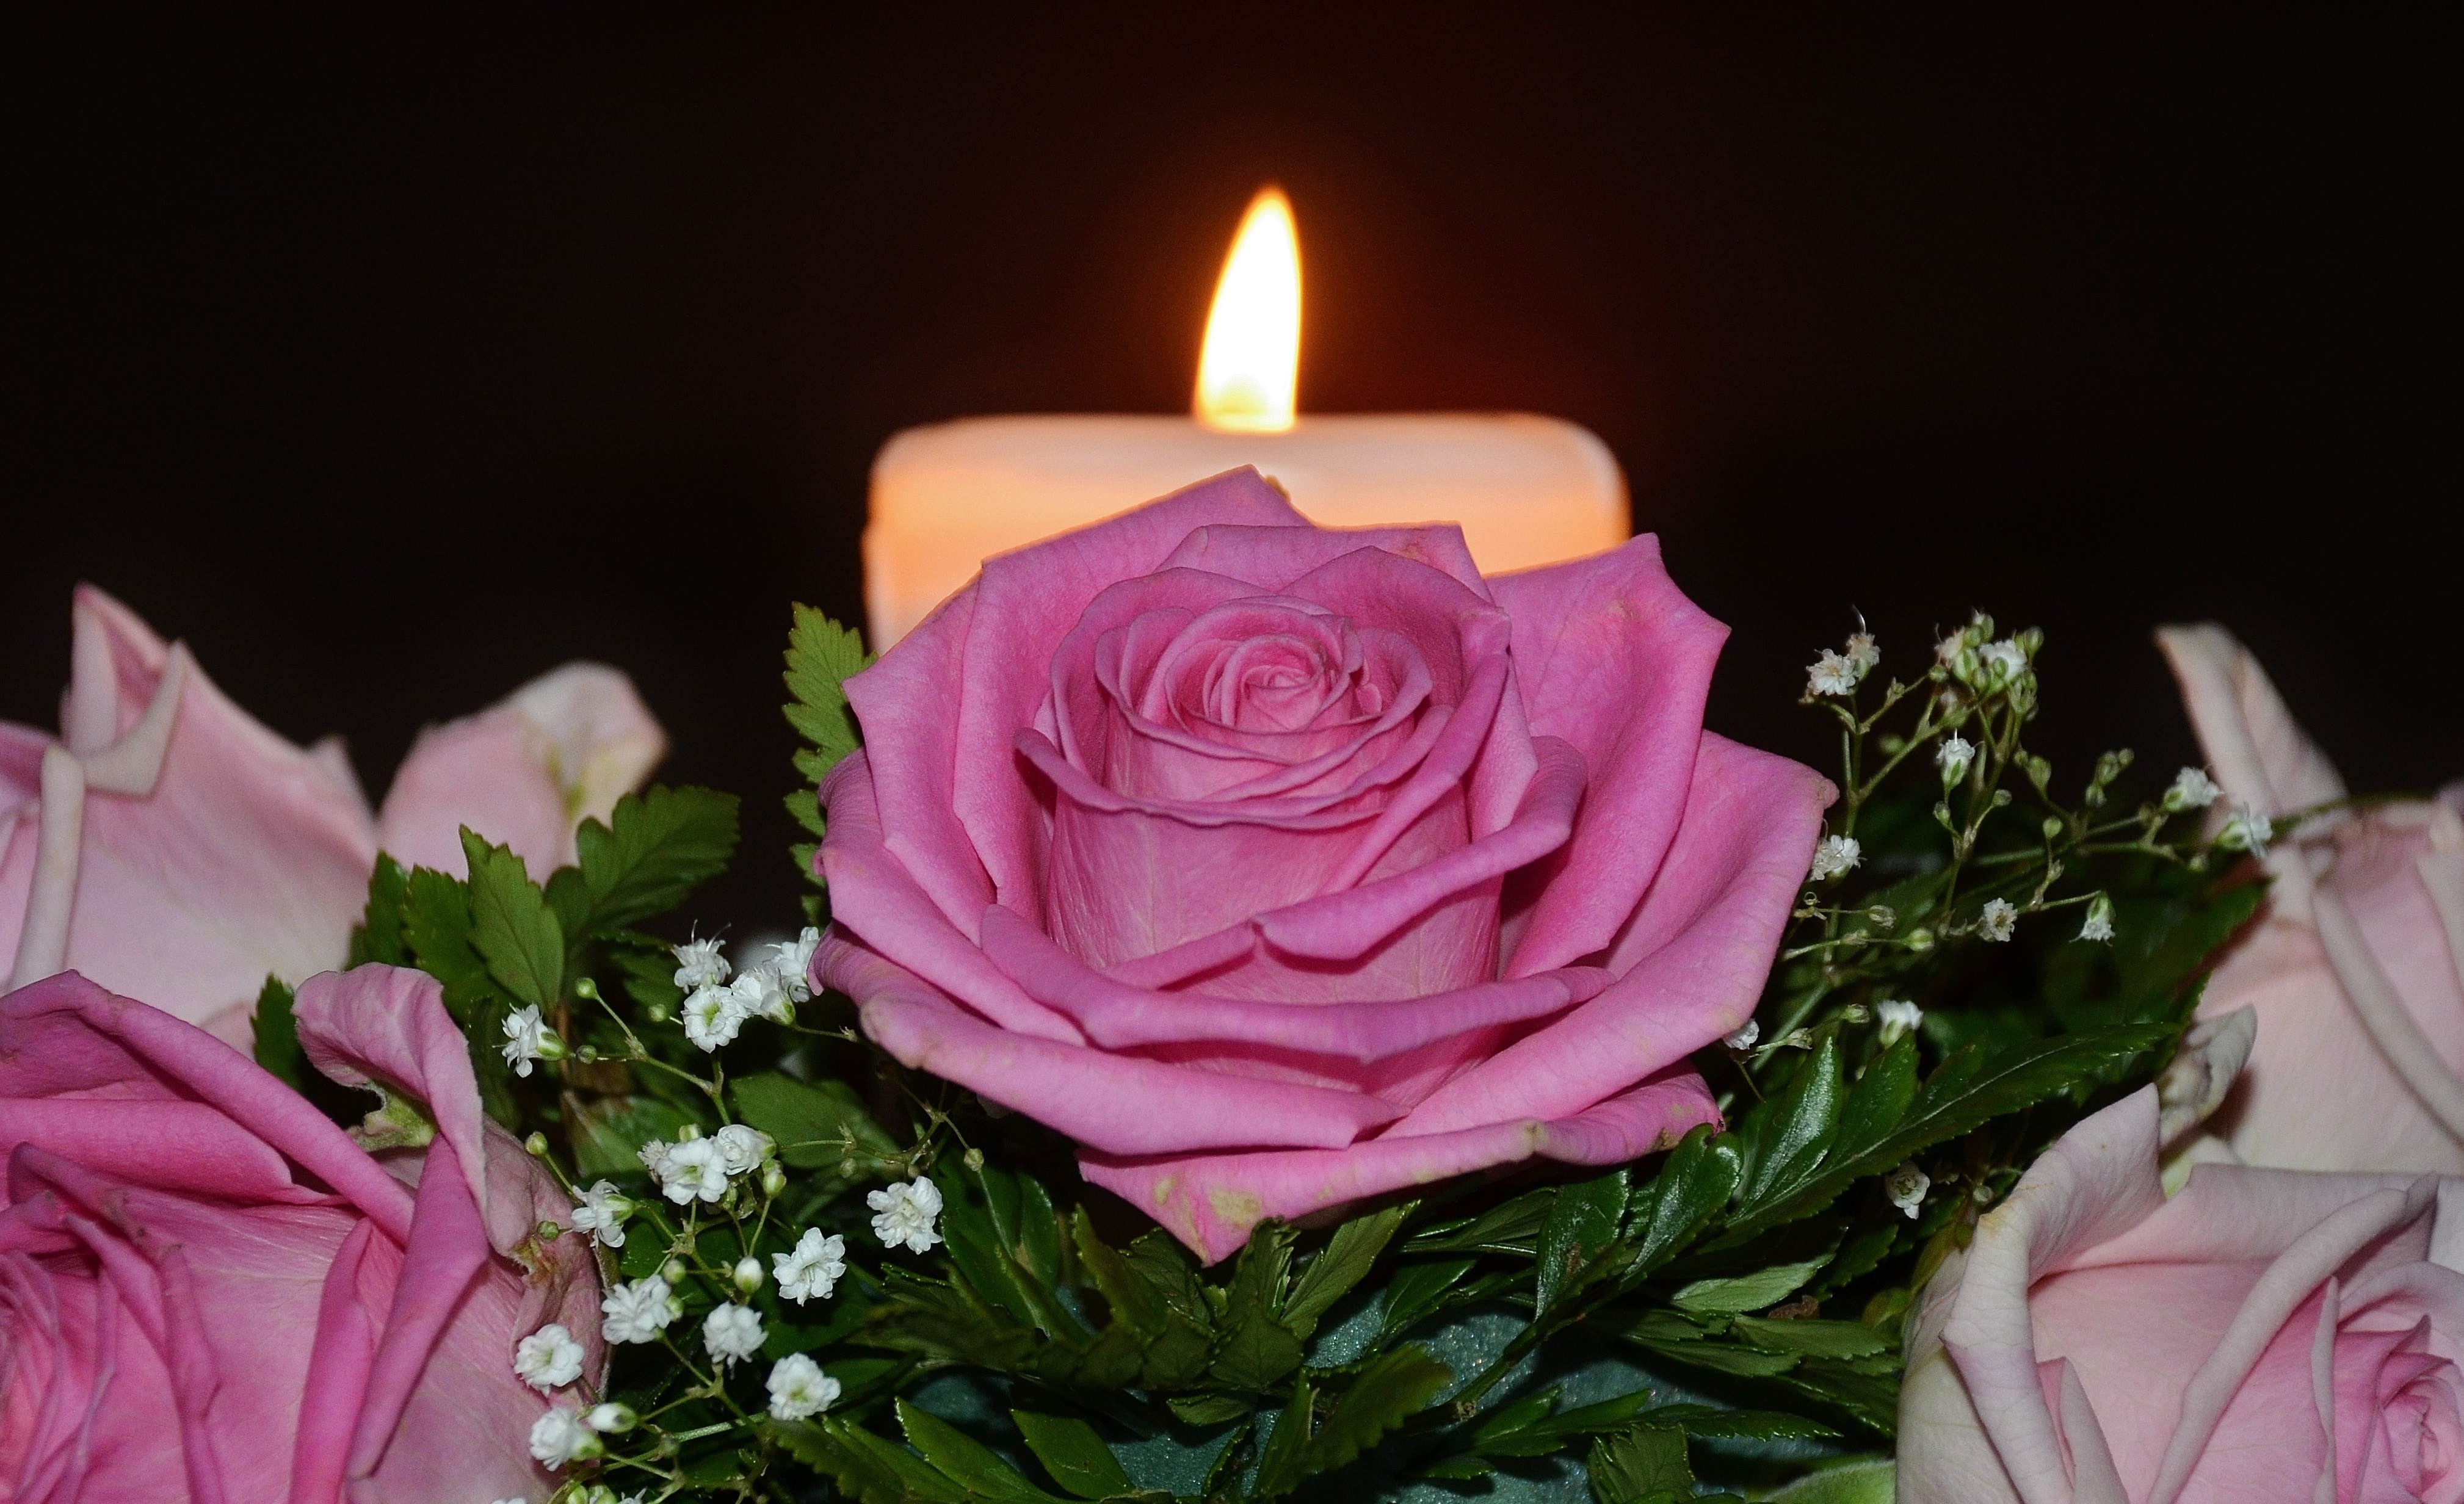 pink rose near white pillar candle